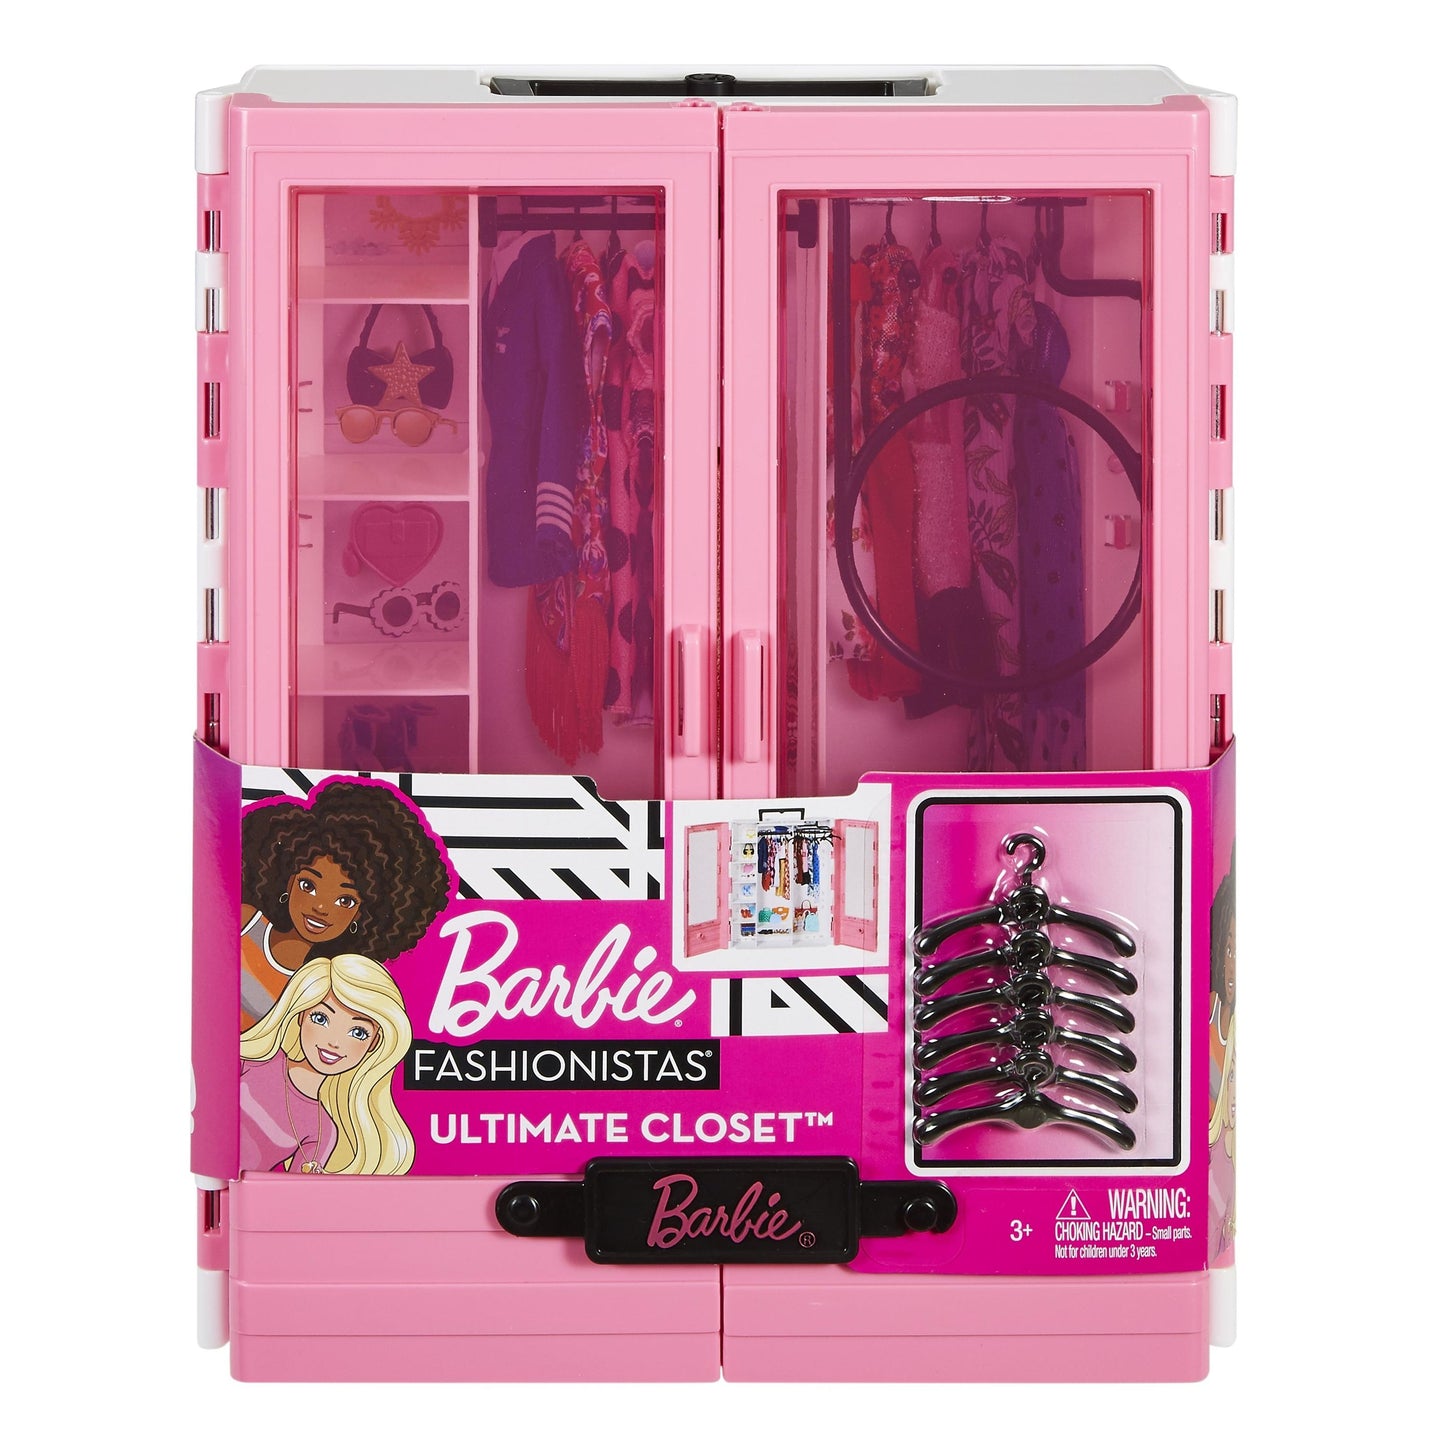 Đồ chơi trẻ em: phụ kiện tủ thời trang đẳng cấp của Barbie